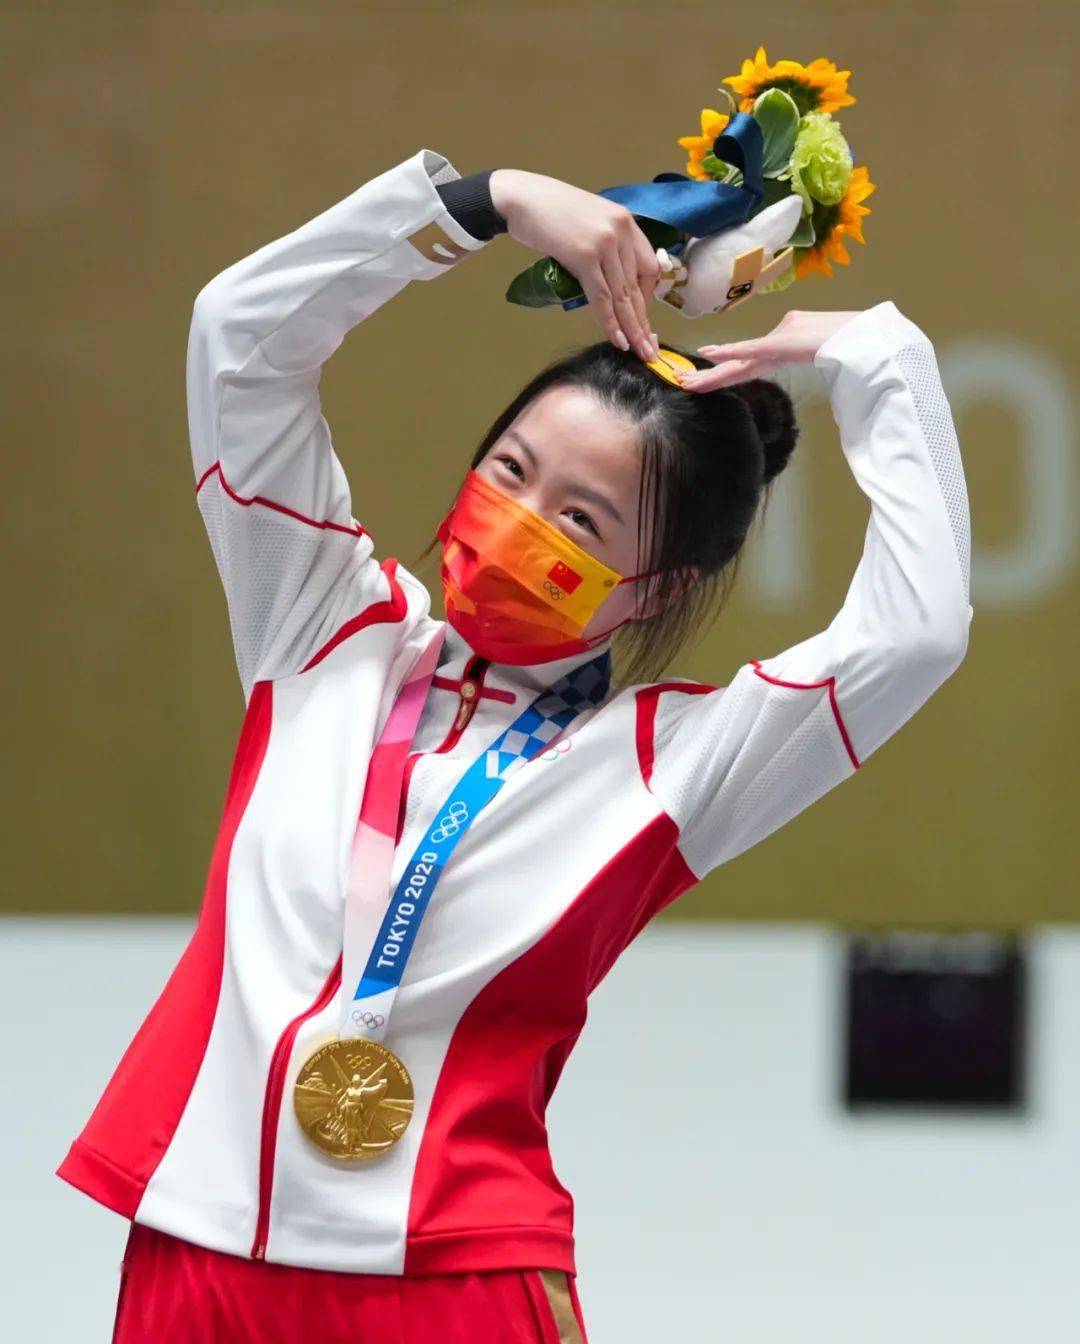 东京奥运会冠军花束,桔梗代表爱和勇气